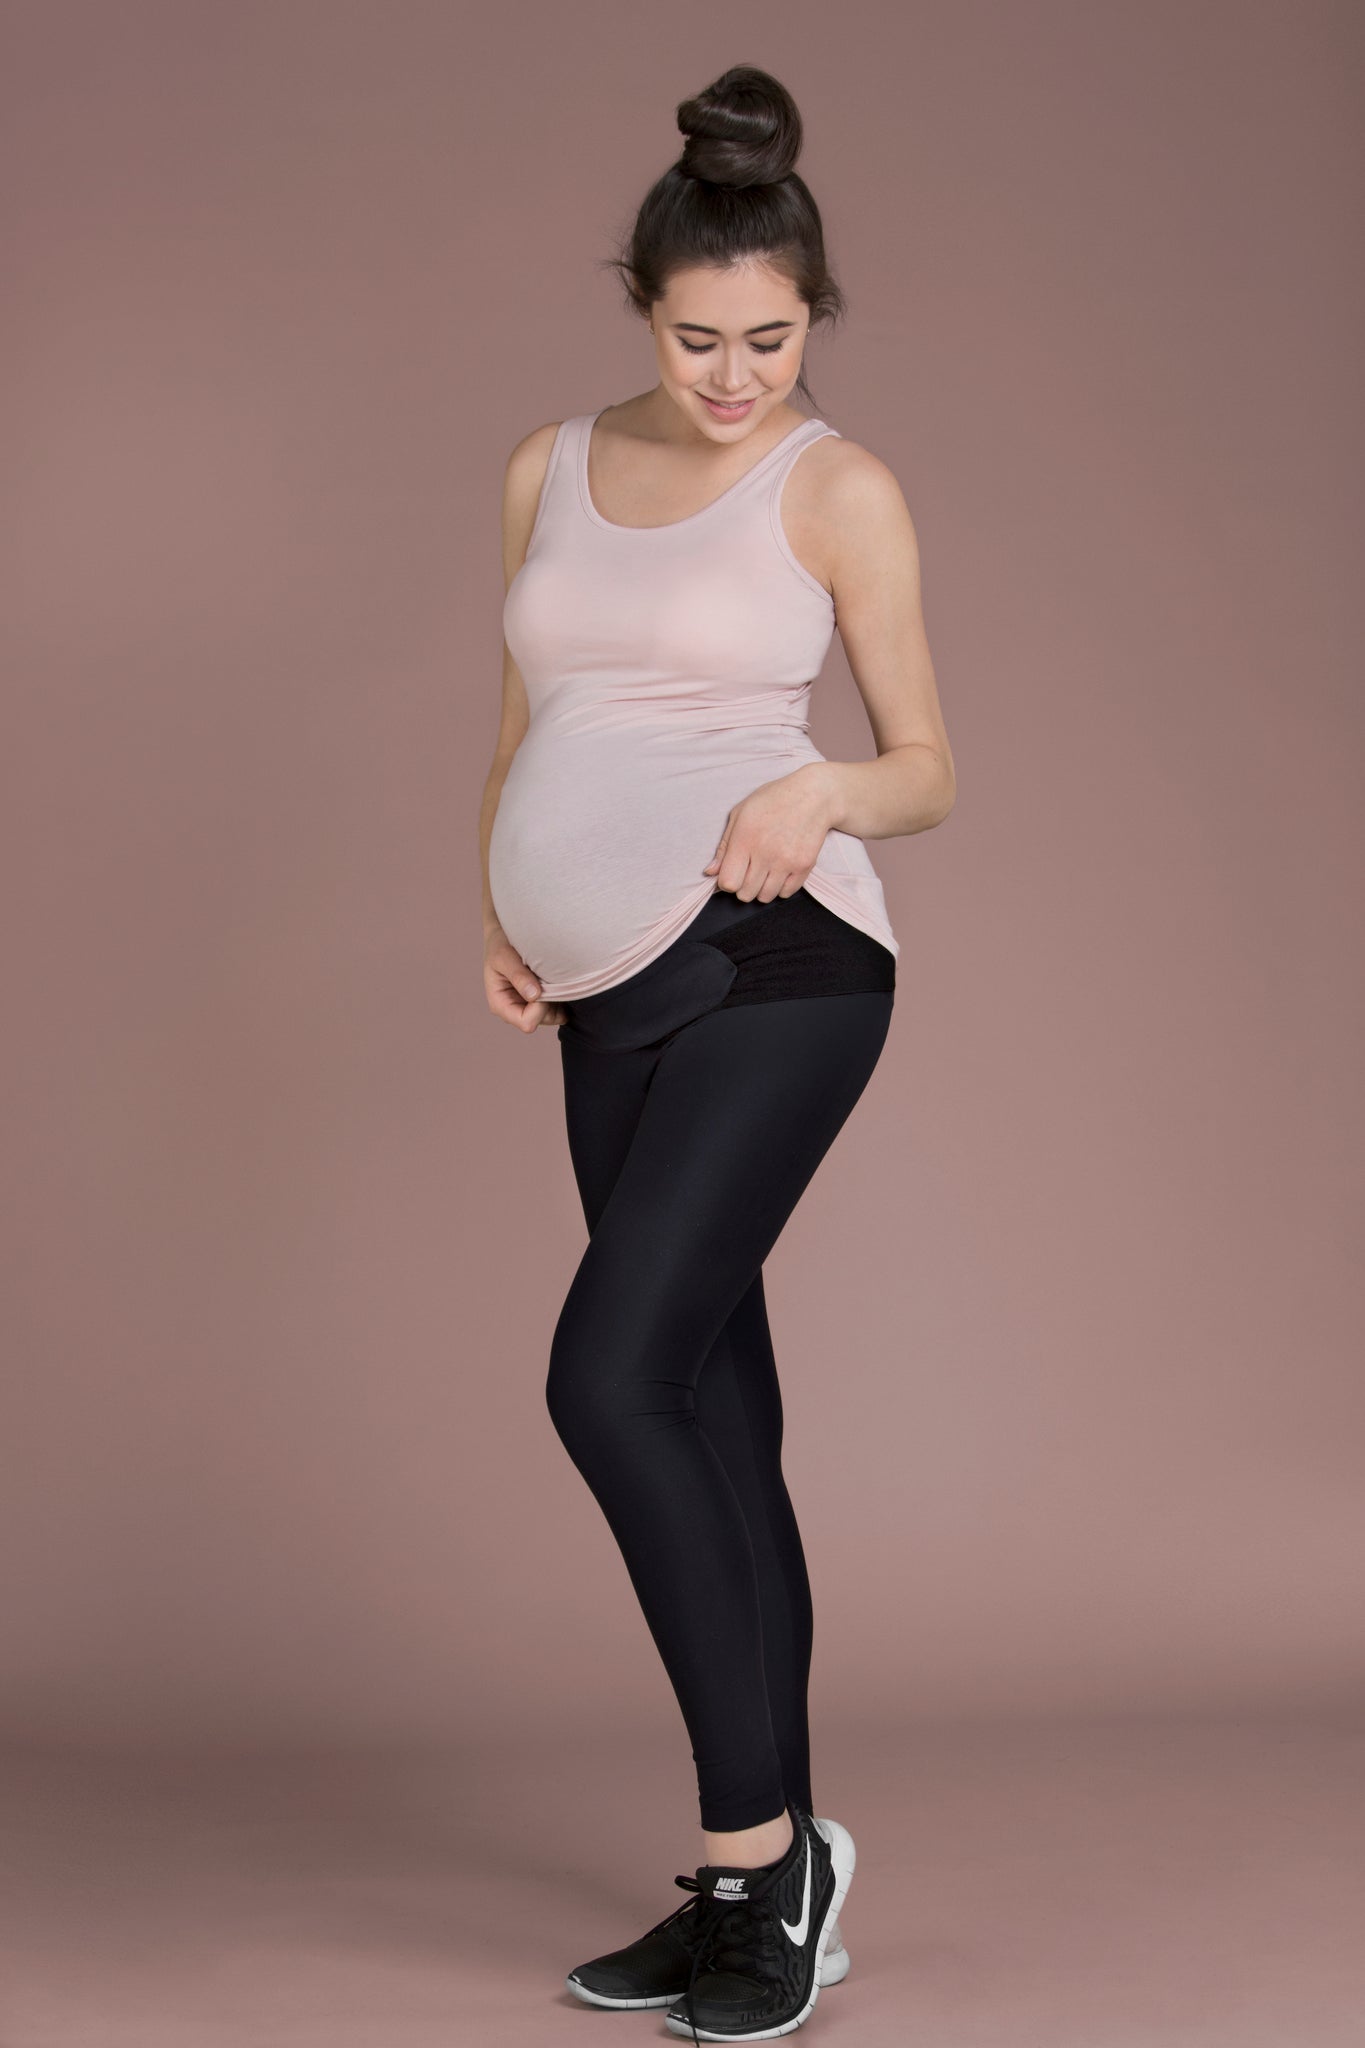 Black Leggings, Maternity, Full Length